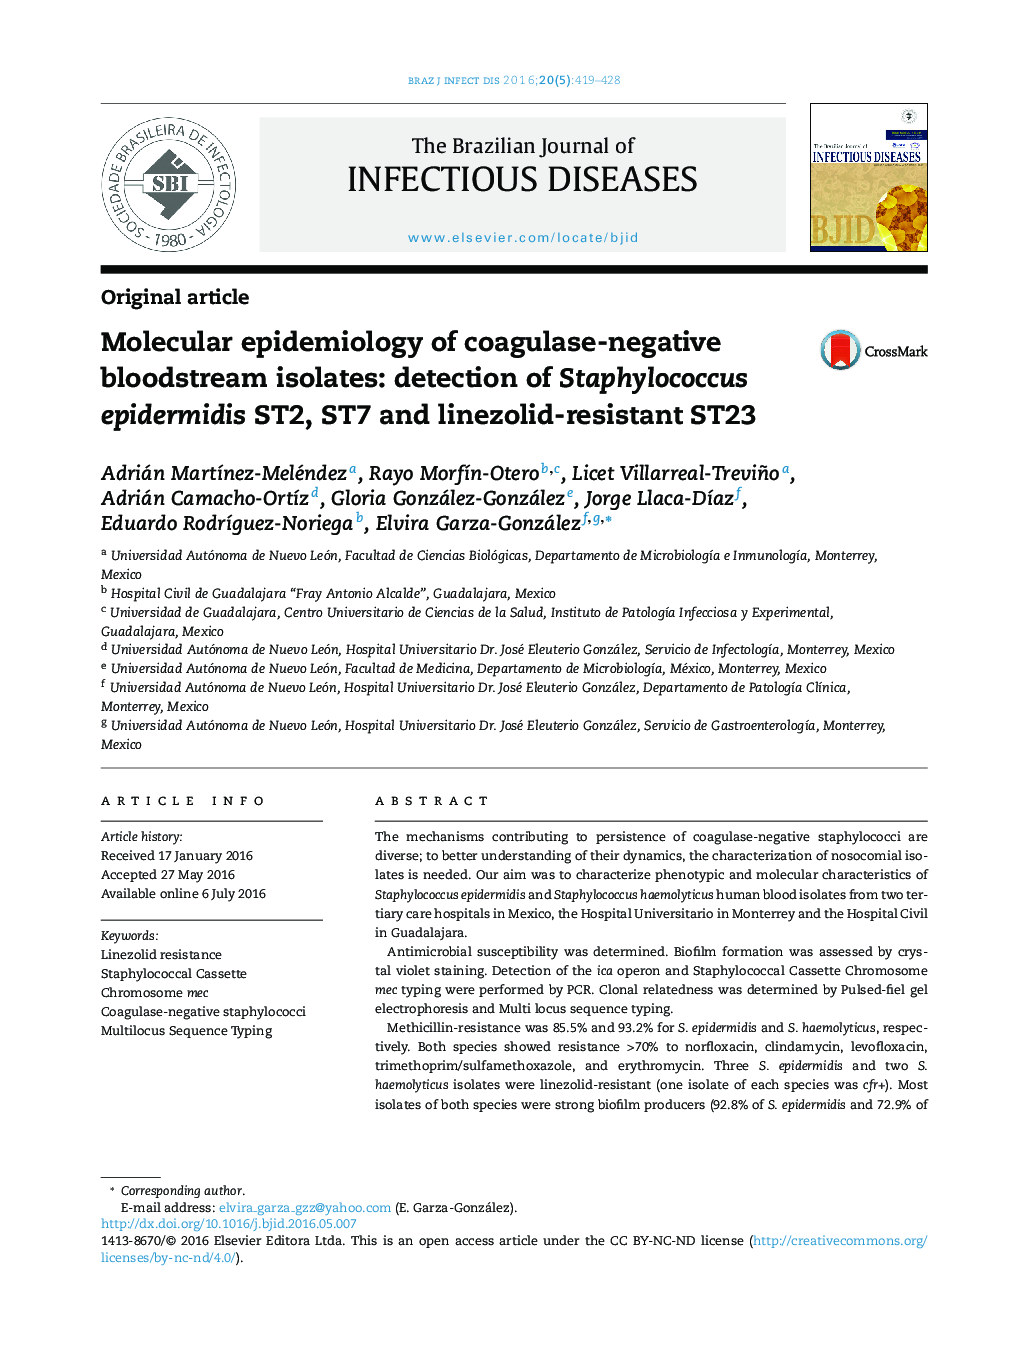 اپیدمیولوژی ایزوله های مولکولی جریان خون کواگولاز منفی: تشخیص استافیلوکوکوس اپیدرمیدیس ST2، ST7 و ST23 مقاوم در برابر لینزولید